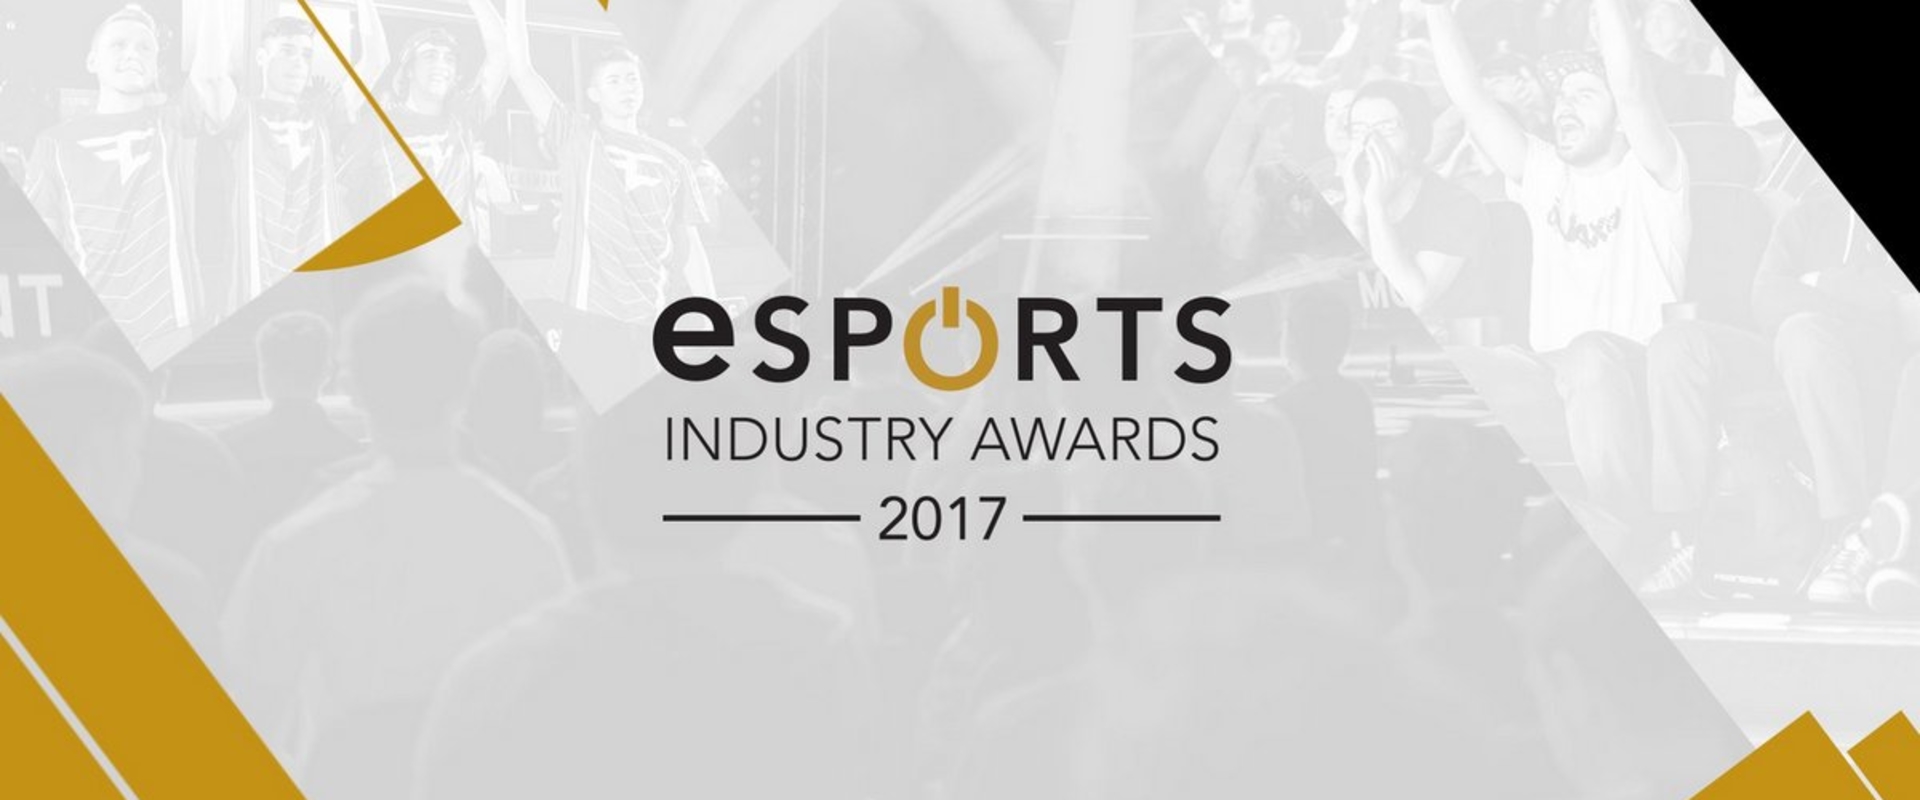 Jöhetnek a jelöltek: 2017-ben is lesz Esports Industry Awards